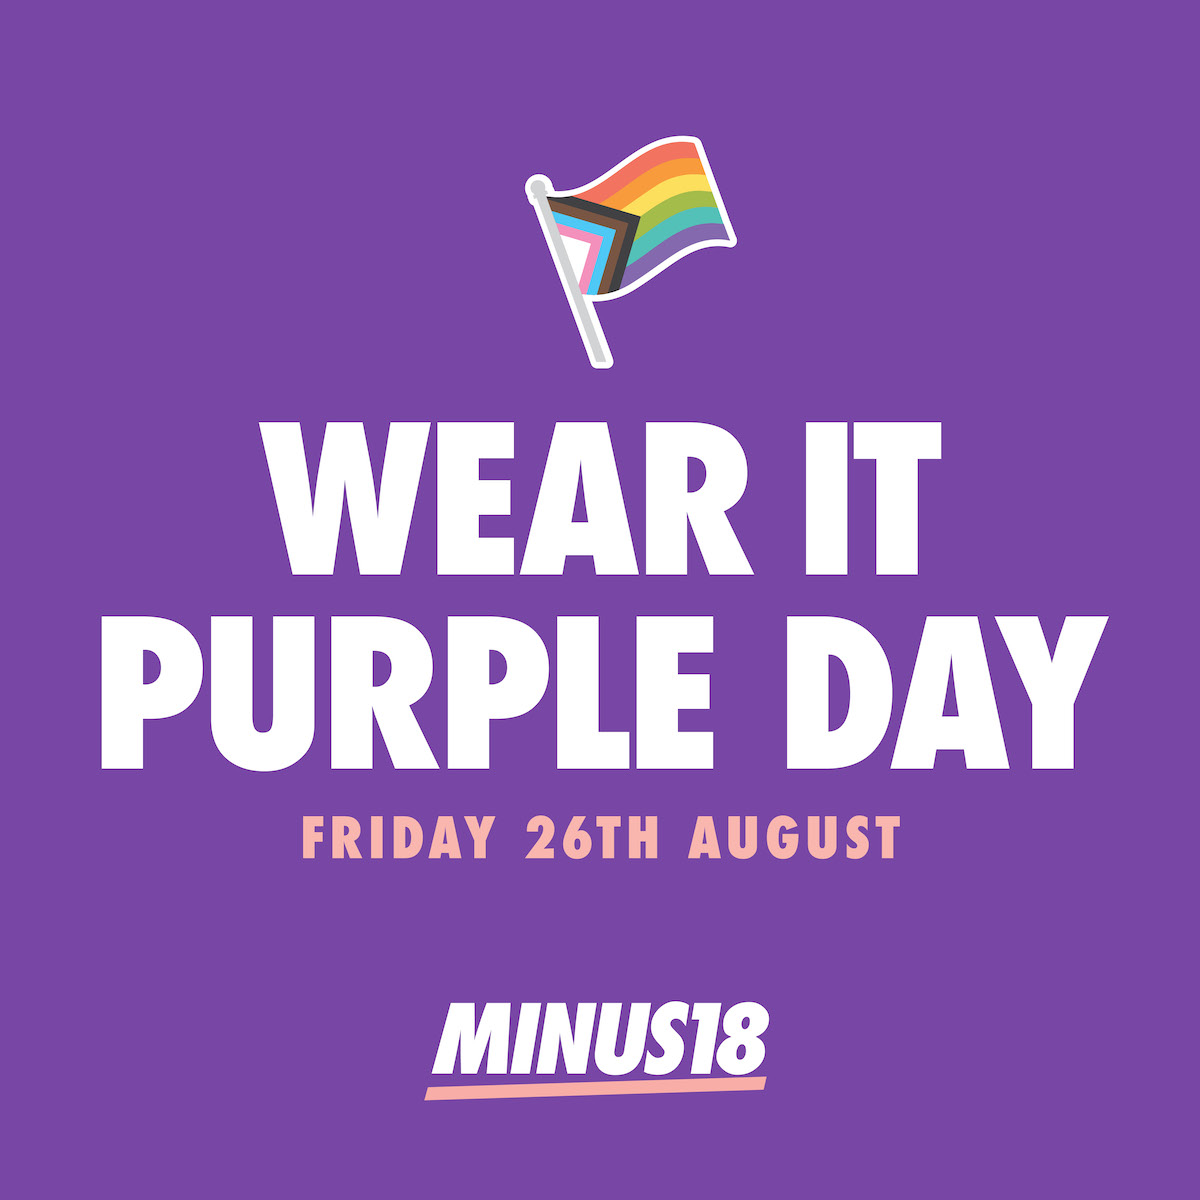 Hôm nay chúng ta cùng mặc đồng phục tím để ủng hộ cho ngày Wear it Purple nhé! Đừng quên truy cập đến những tài nguyên số vô cùng hữu ích về ngày này để cùng chia sẻ với mọi người.